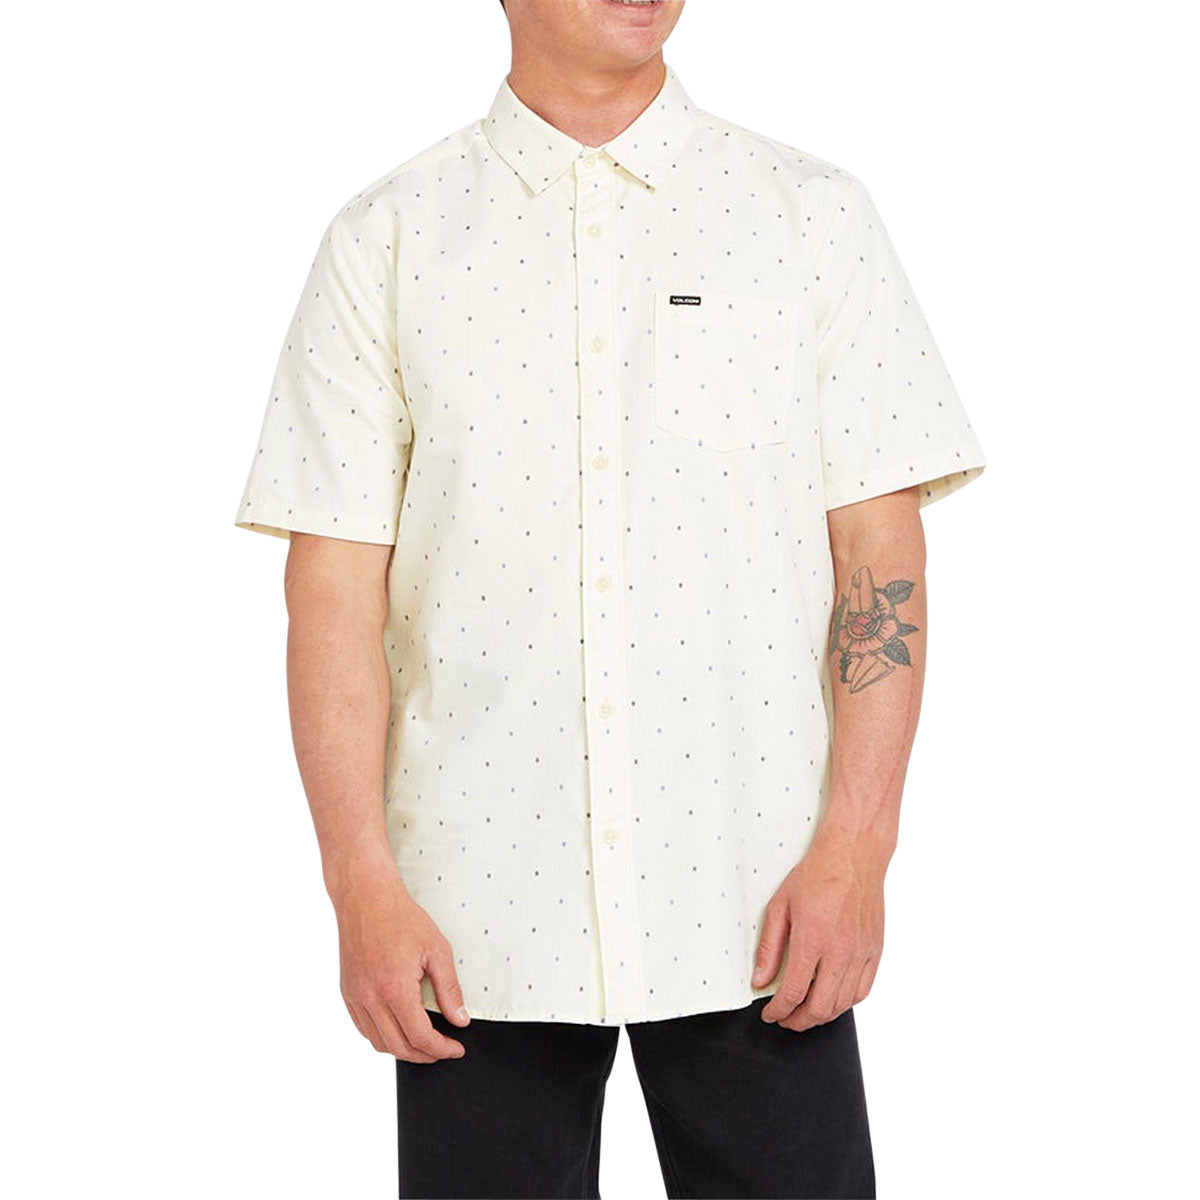 Volcom Honestone Woven Shirt - Off White image 1